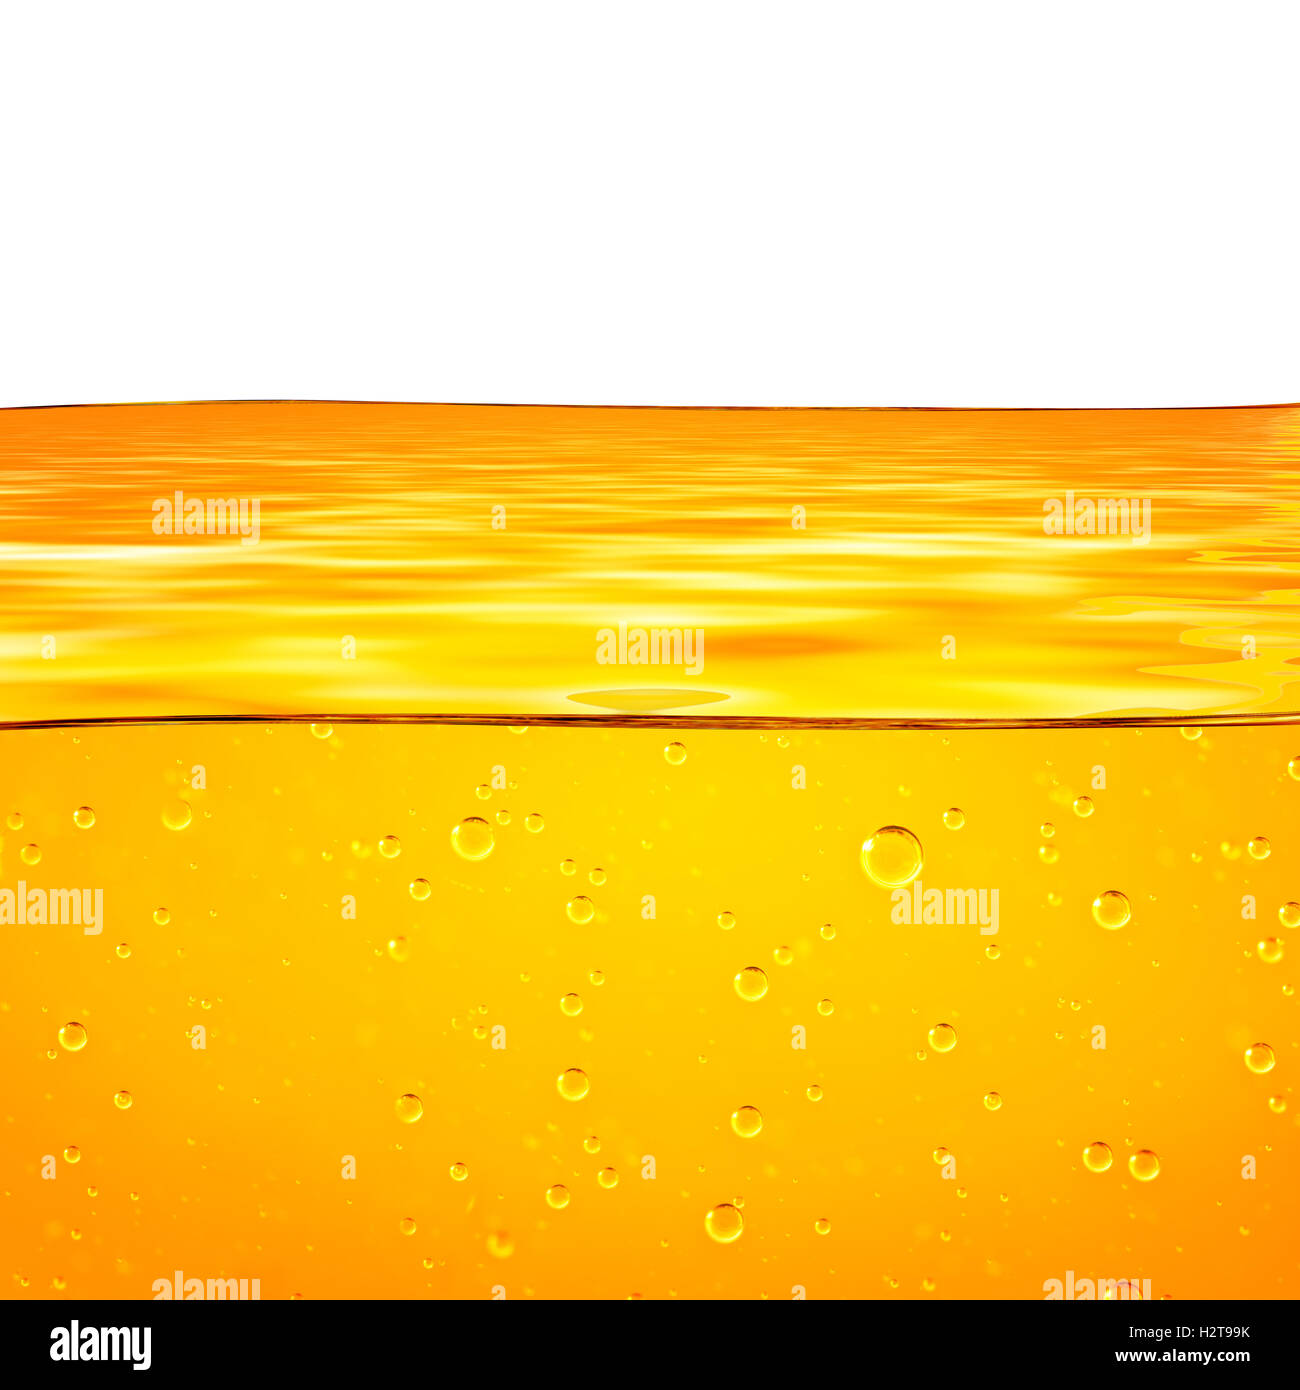 L'huile. Le miel. La bière. Des jus de fruits. Orange jaune liquide avec des bulles d'oxygène. Libre. Orange Jaune vagues et fond blanc pour le texte. Banque D'Images